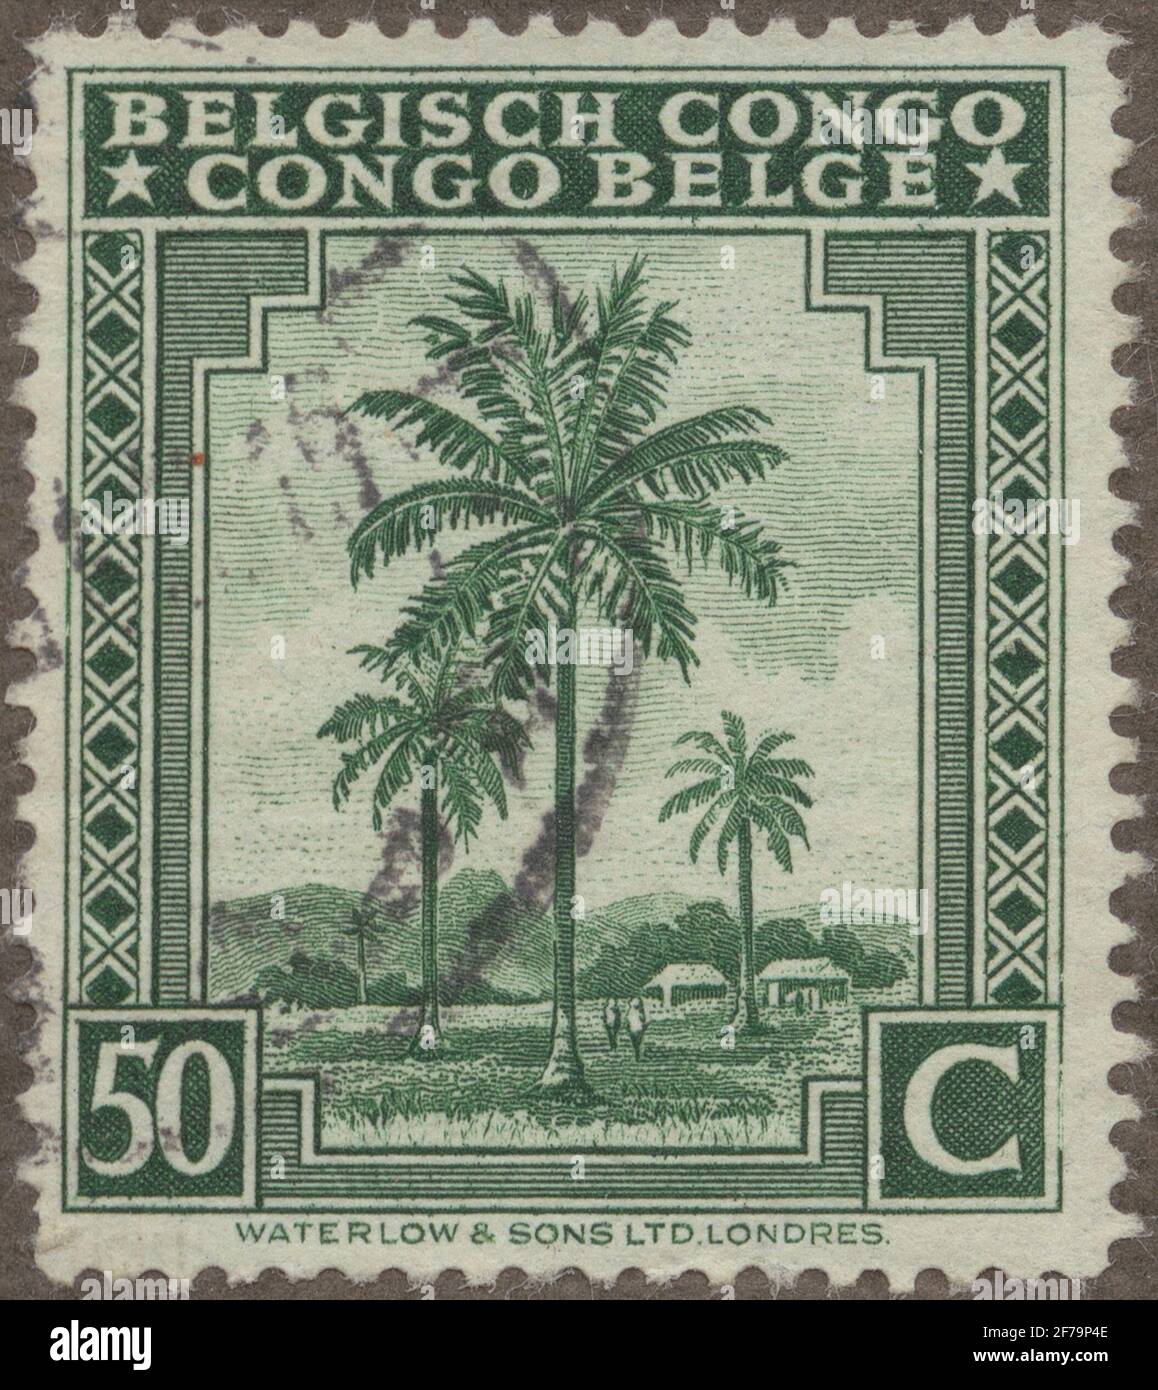 Stempel der Gösta Bodman's Philatelist Association, begann 1950.die Briefmarke aus dem belgischen Kondo, 1942. Motive von Kokospalmen. Stockfoto